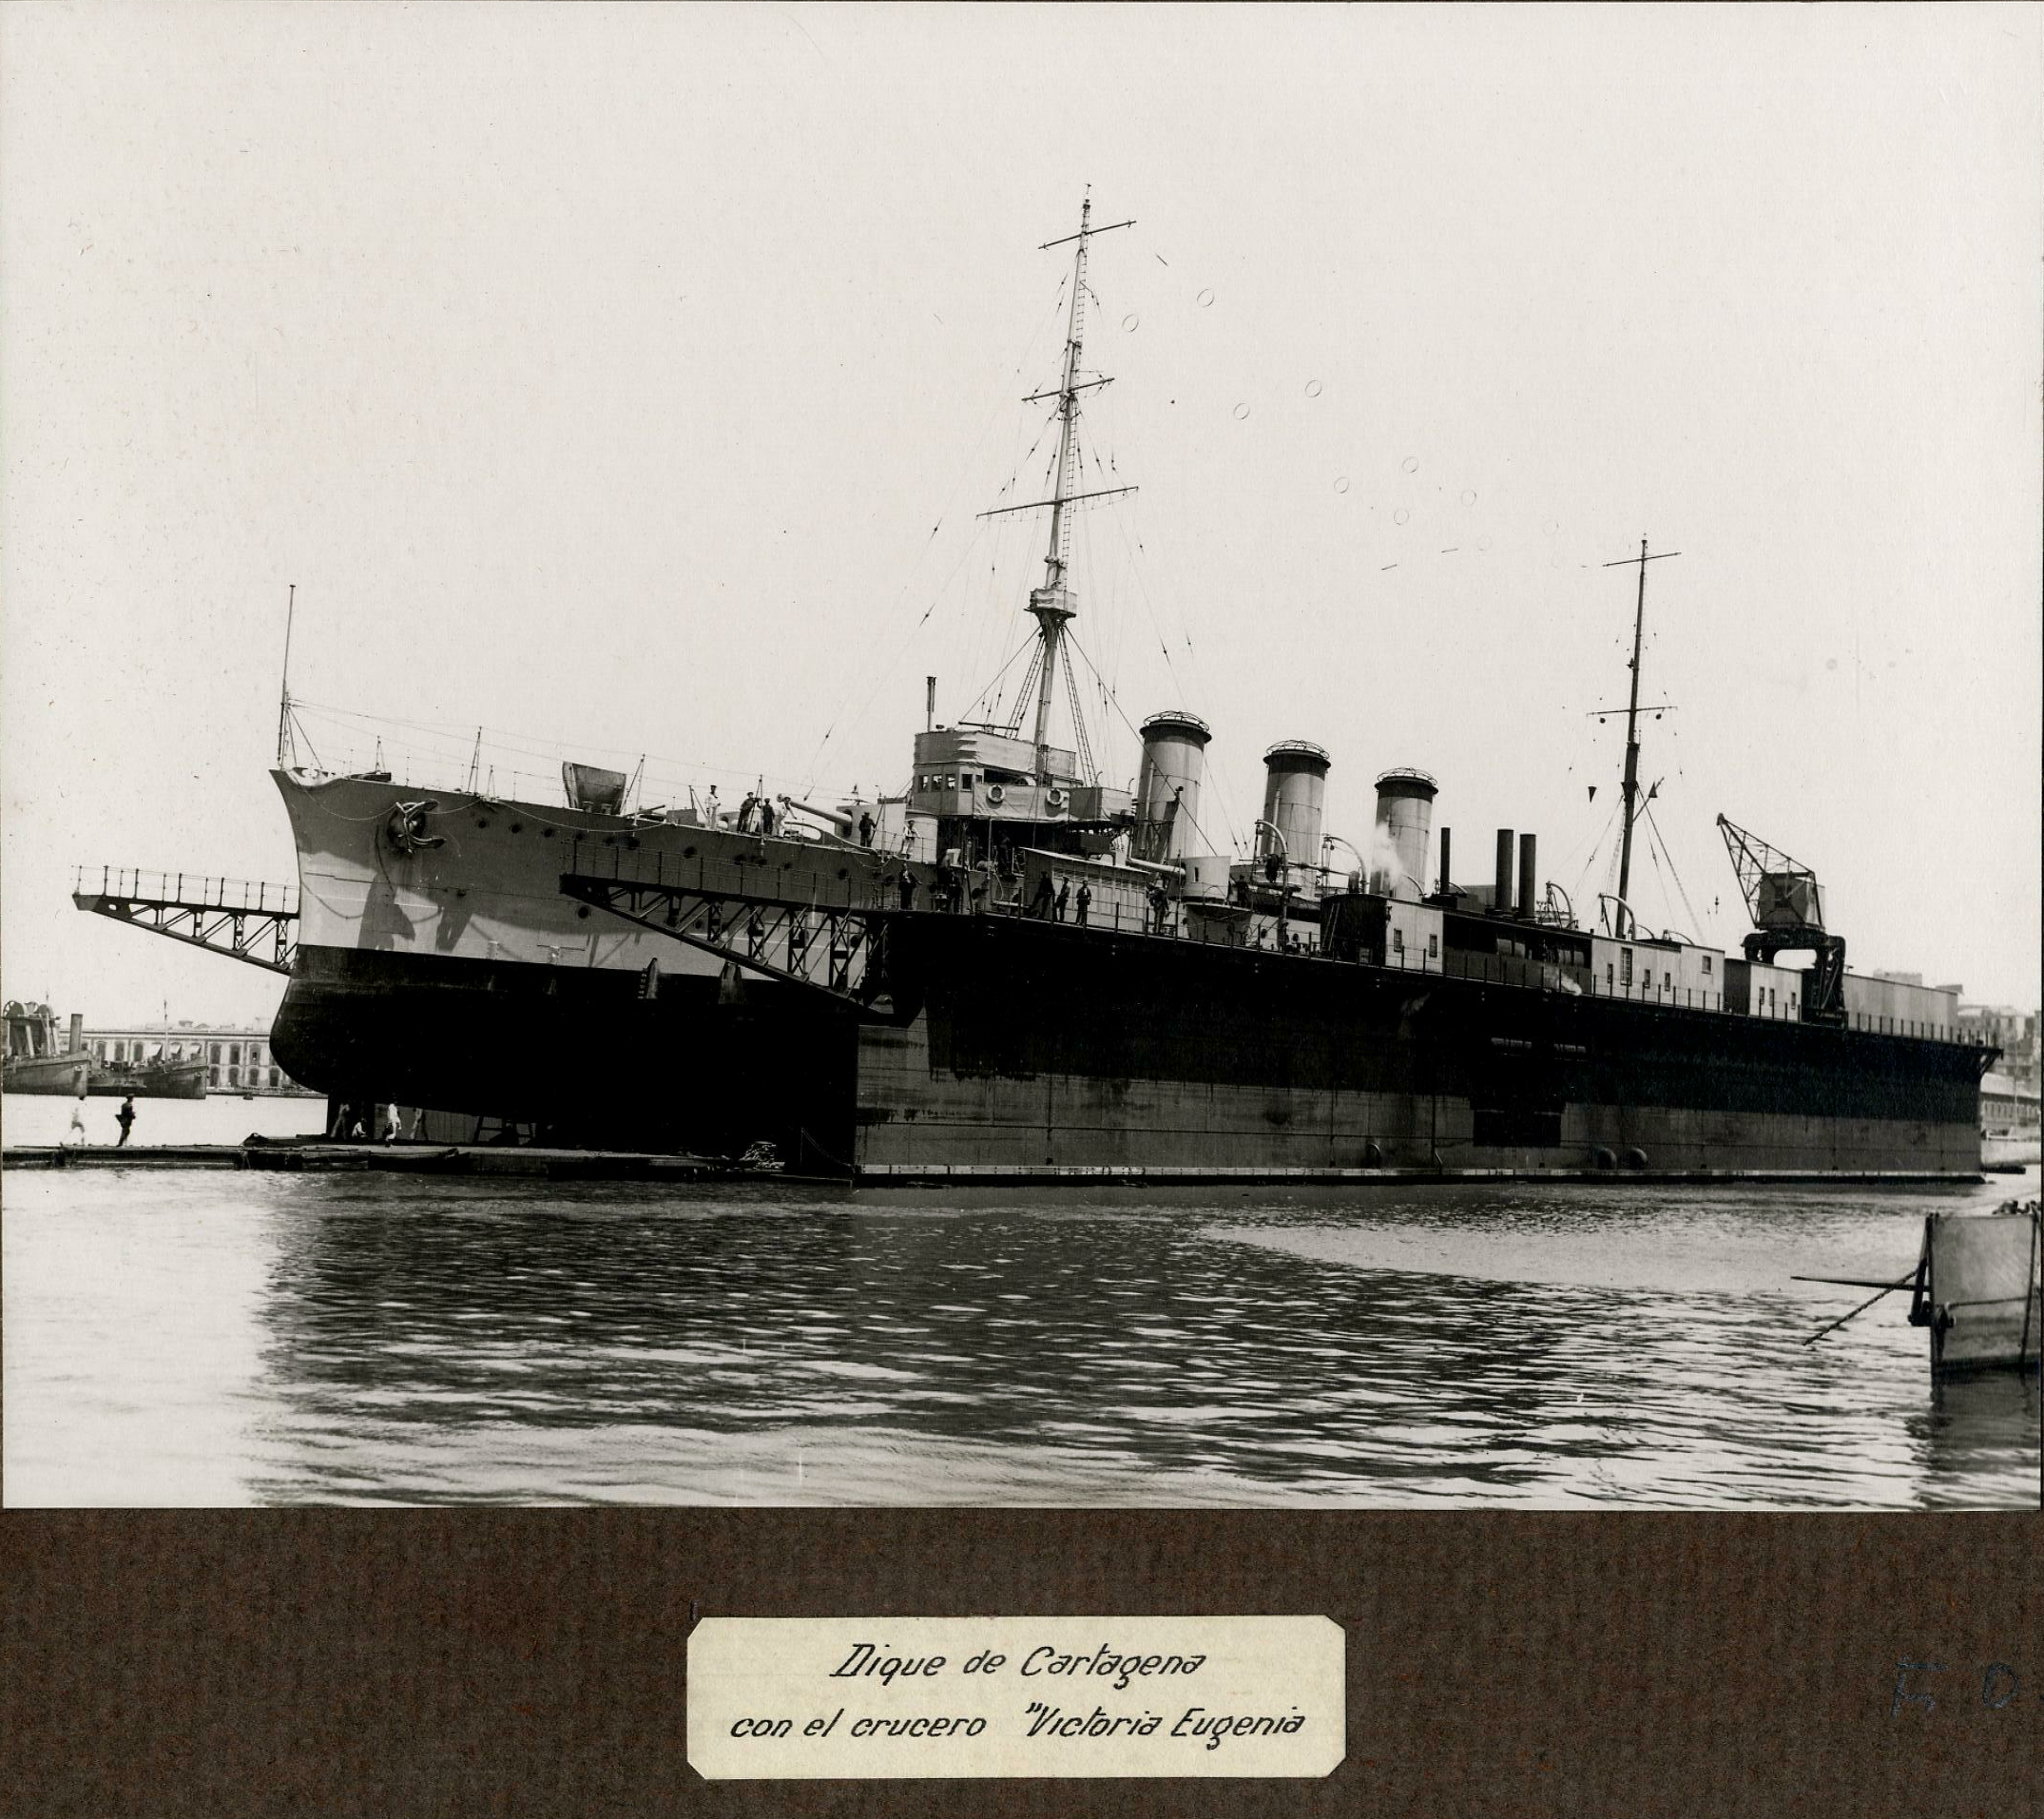 Dique de Cartagena, con el crucero “Victoria Eugenia”. 1900